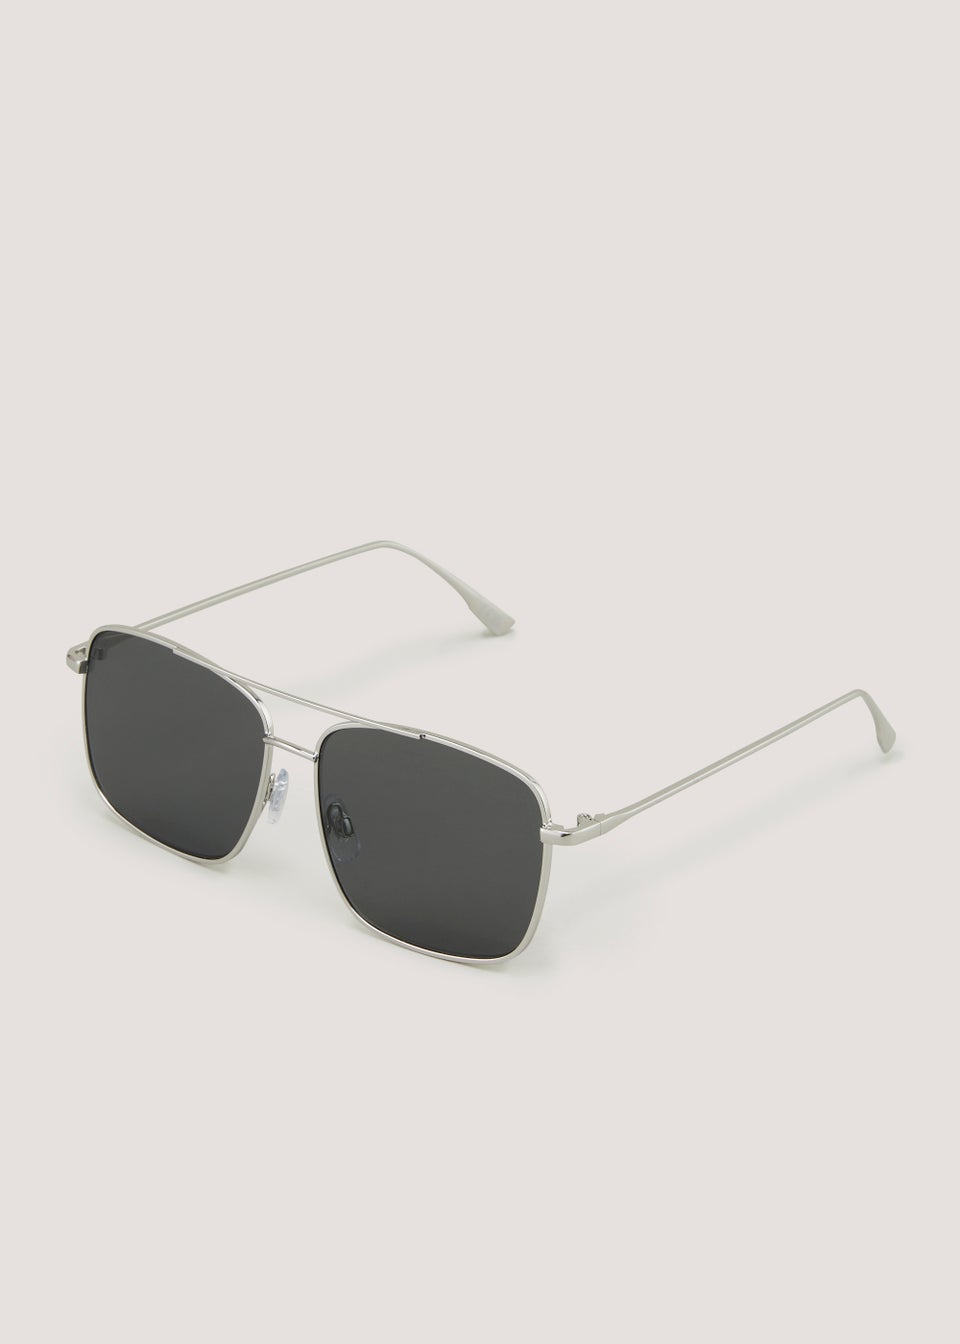 Silver Aviator Square Sunglasses